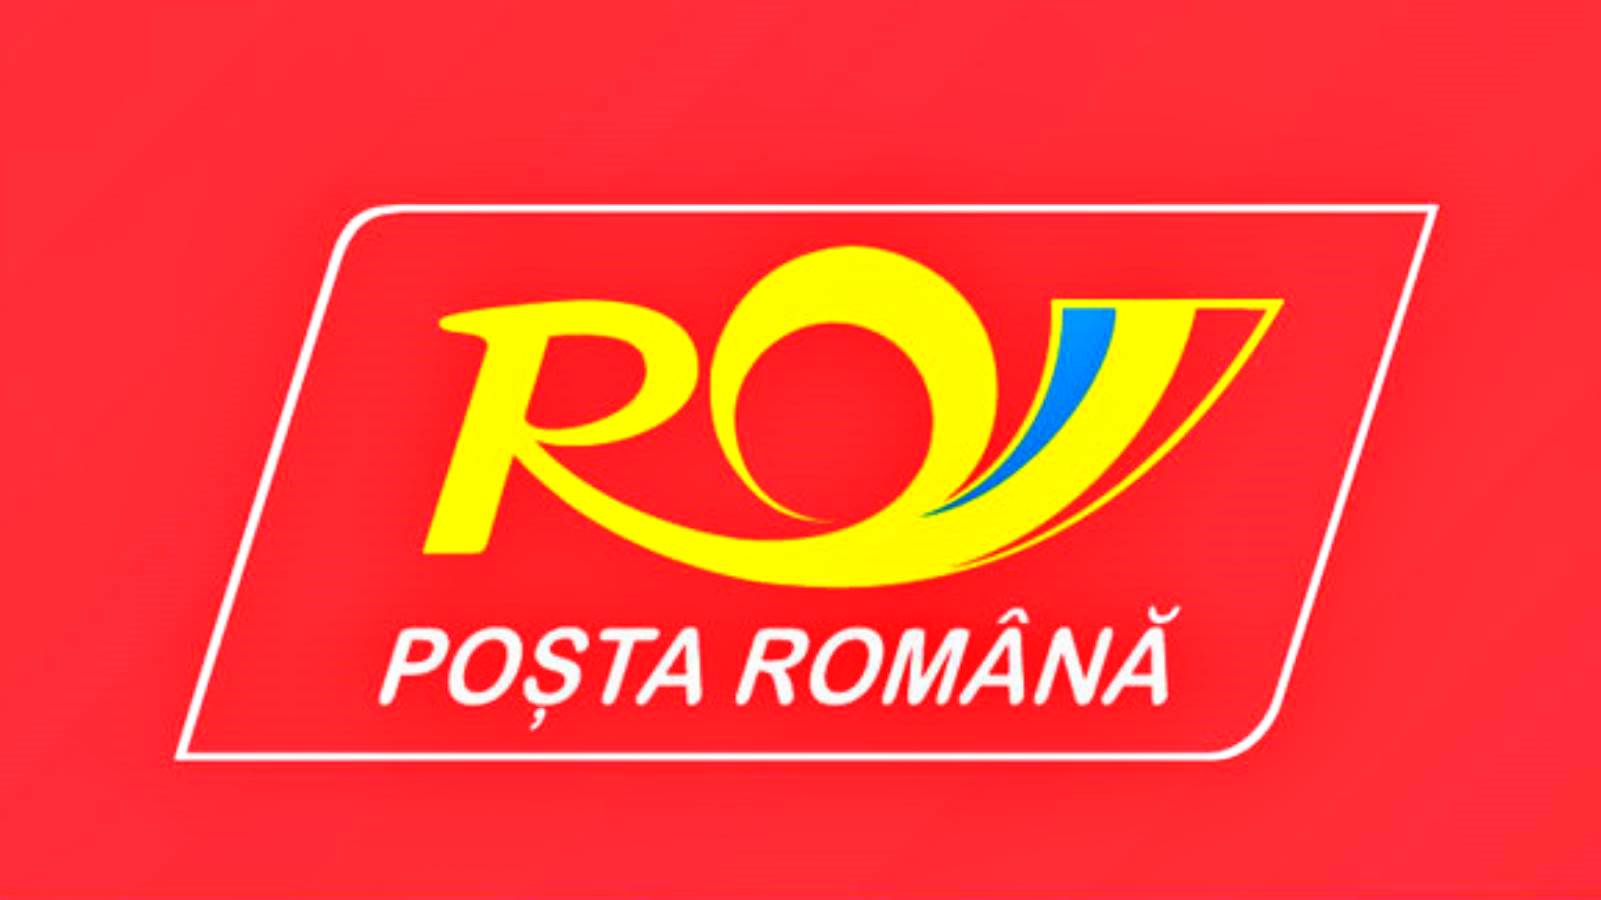 Beslutningen fra den rumænske post blev annonceret til MILLIONER af rumænere